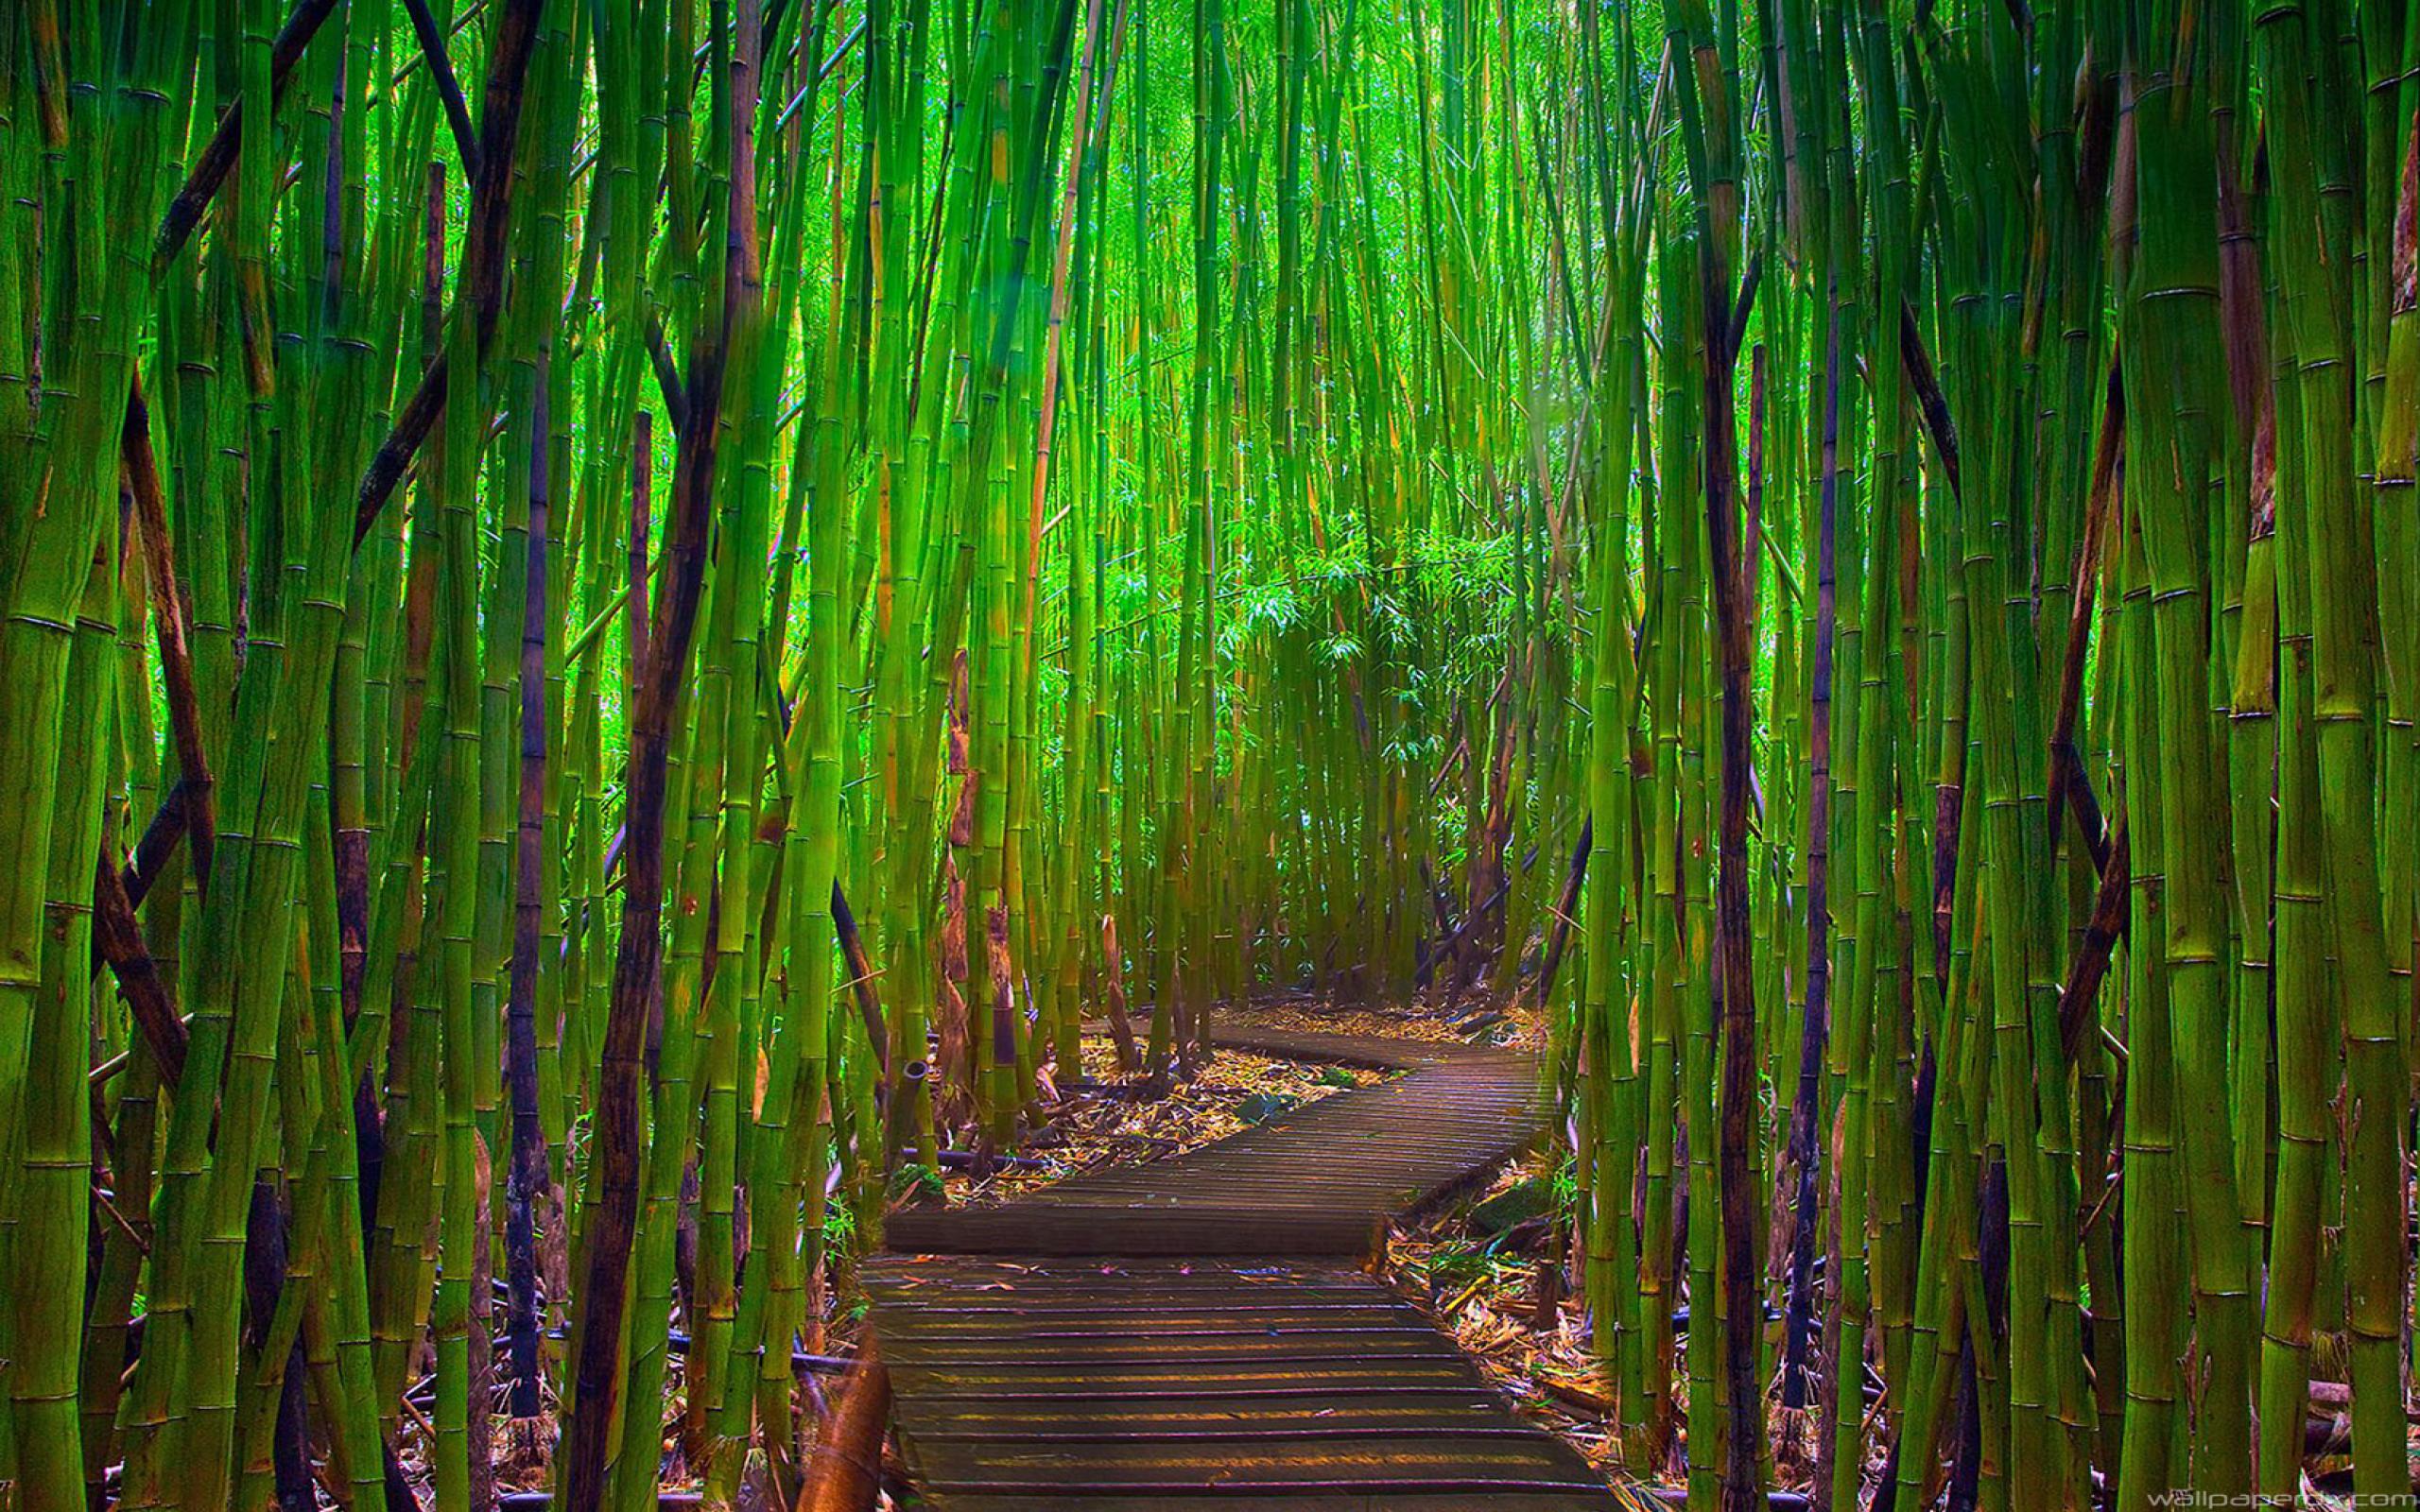 Fondos de Pantalla Bambú, Imágenes HD Bambú, Descargar Imágenes Gratis